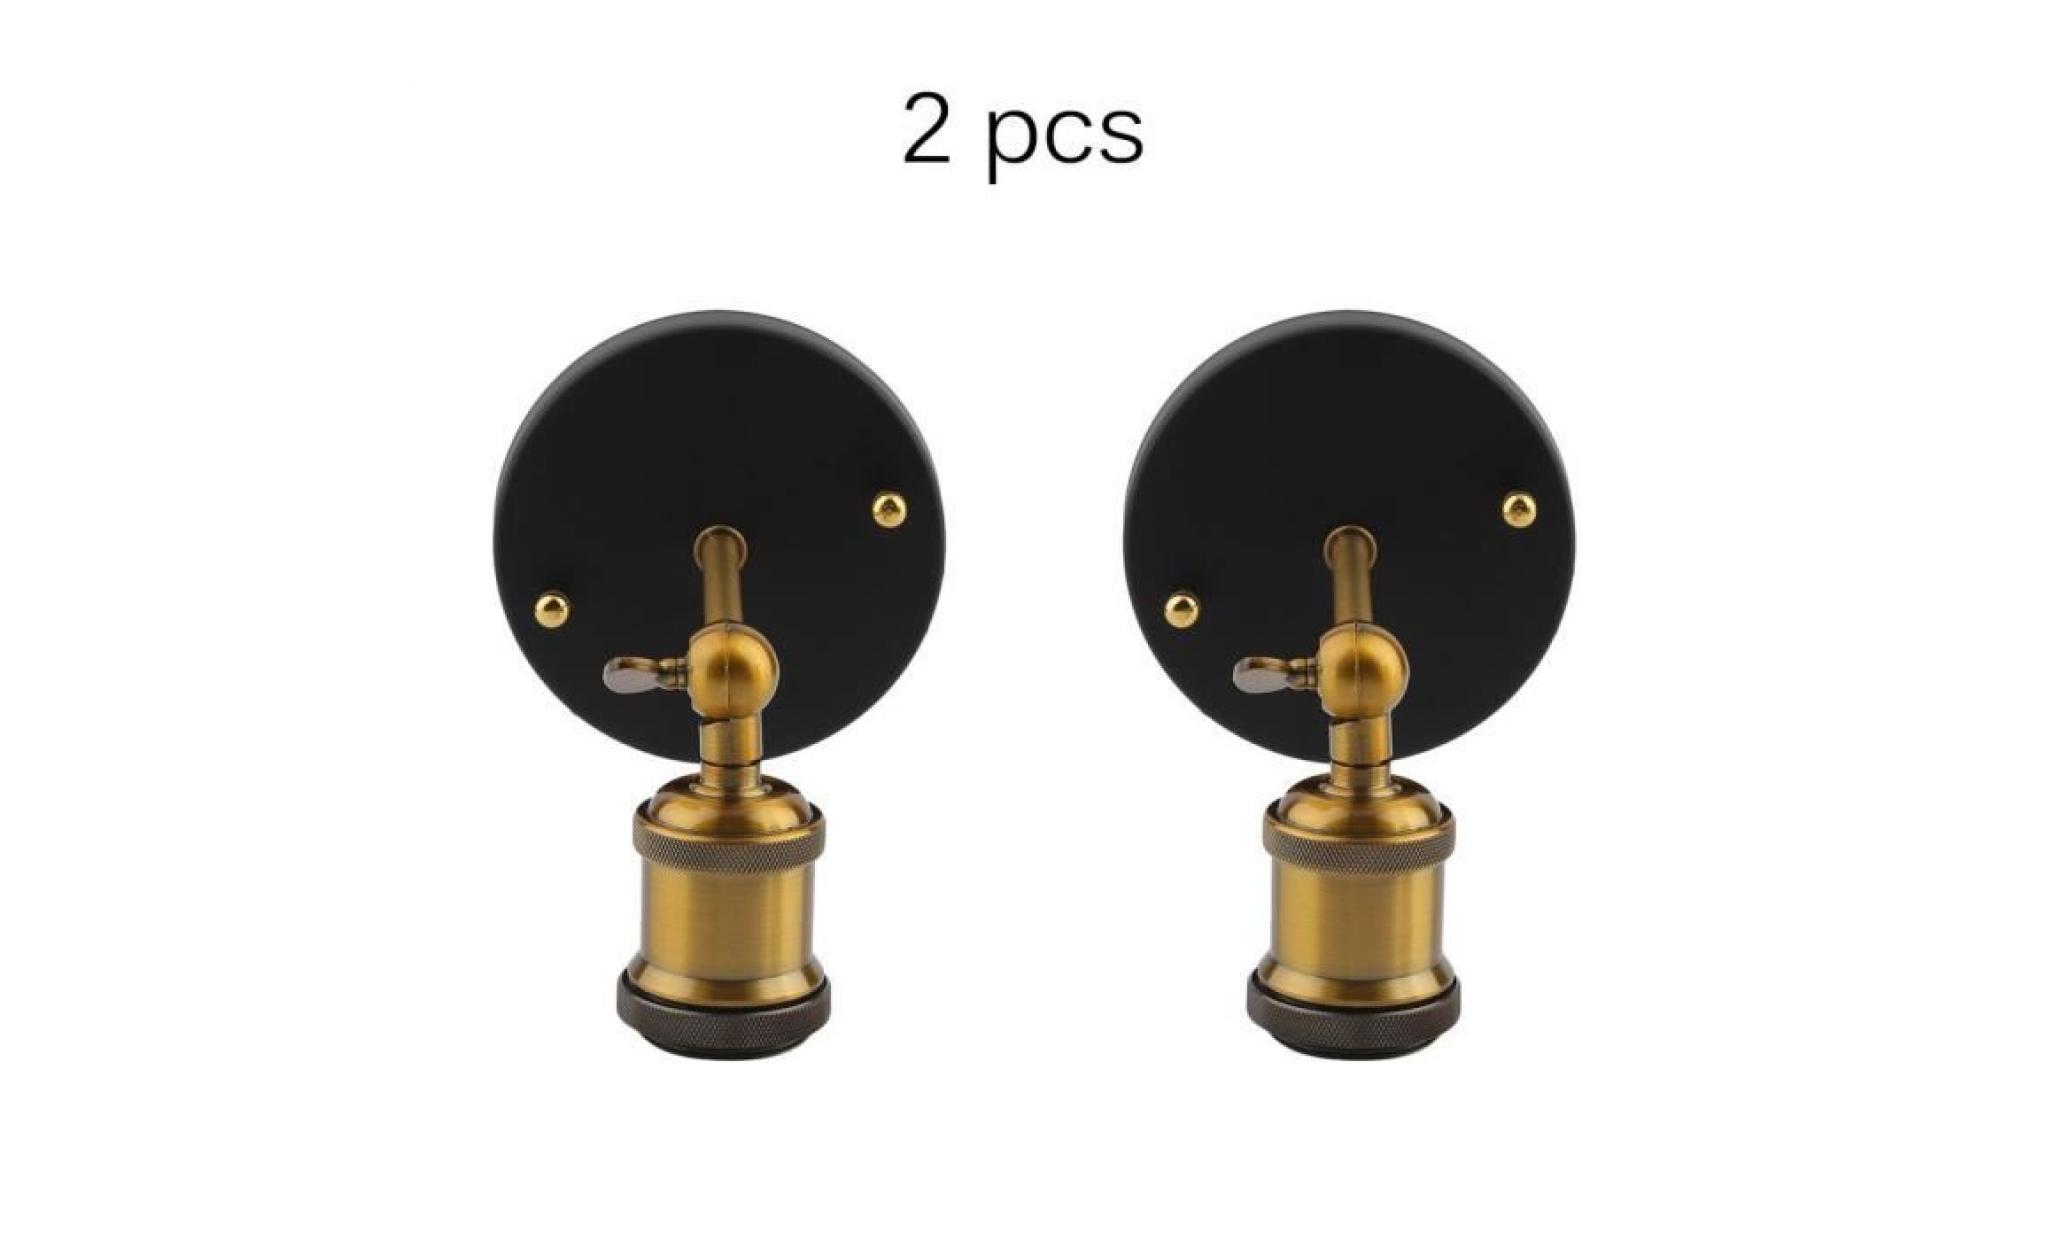 2pcs applique porte lampe design industriel classique(les ampoules non inclus)